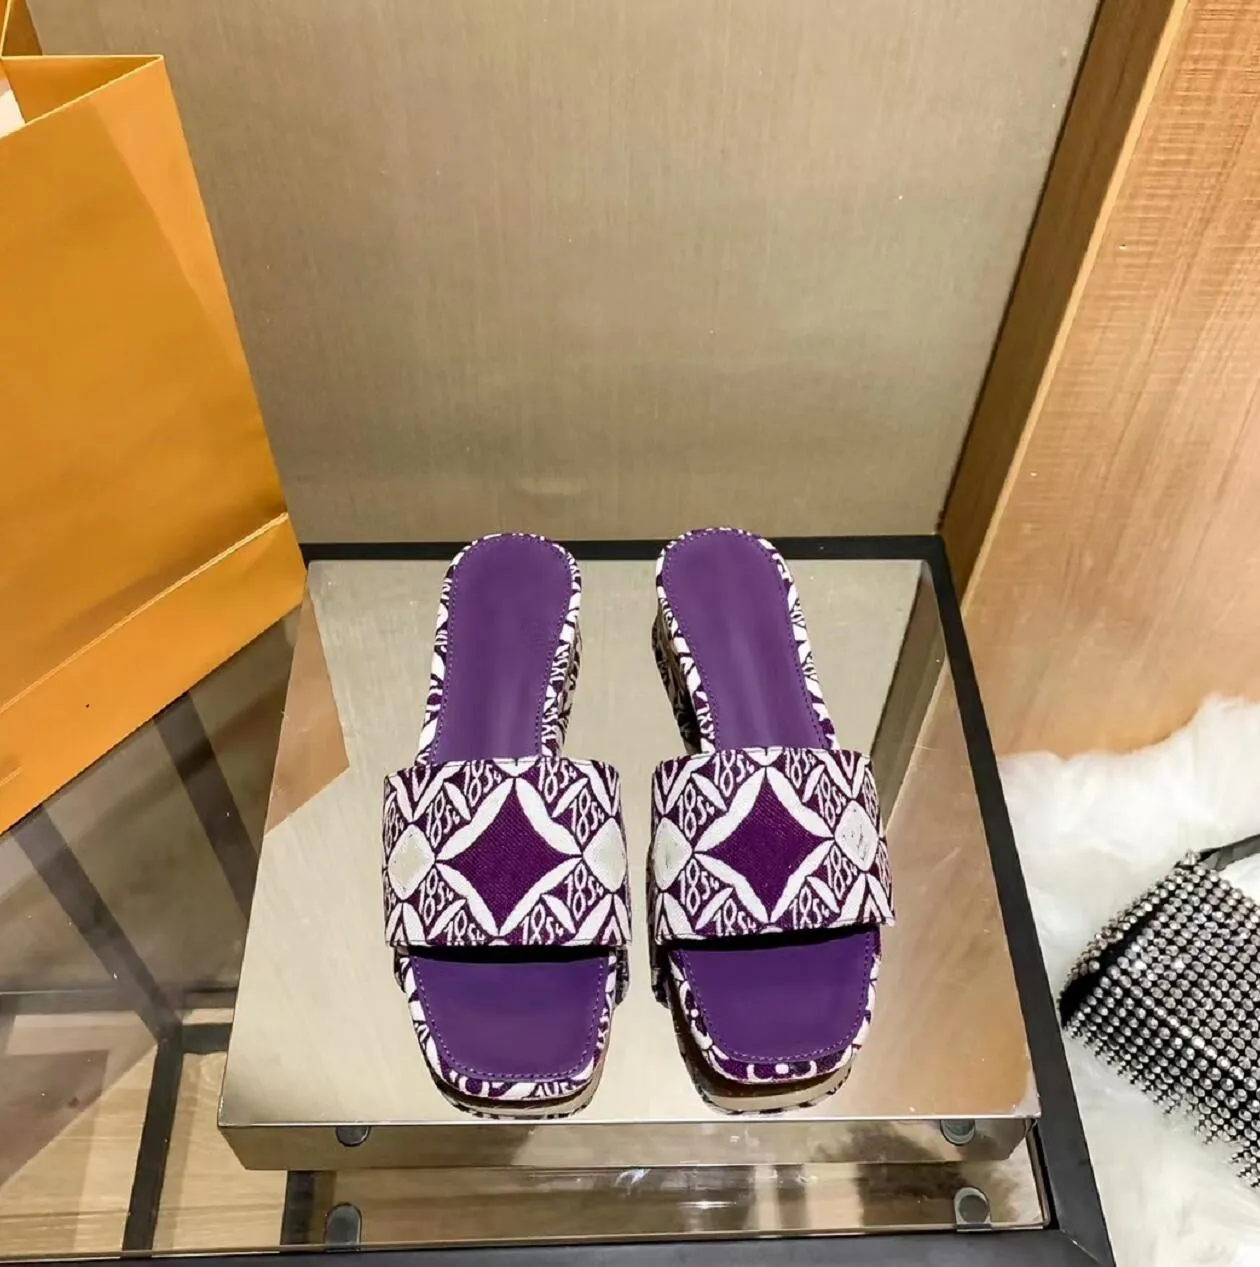 10a качественная дизайнерская обувь новые вышивающие тапочки модные сандалии сандалии отдыха пляжные обувь женщин роскошные шлепанцы мод